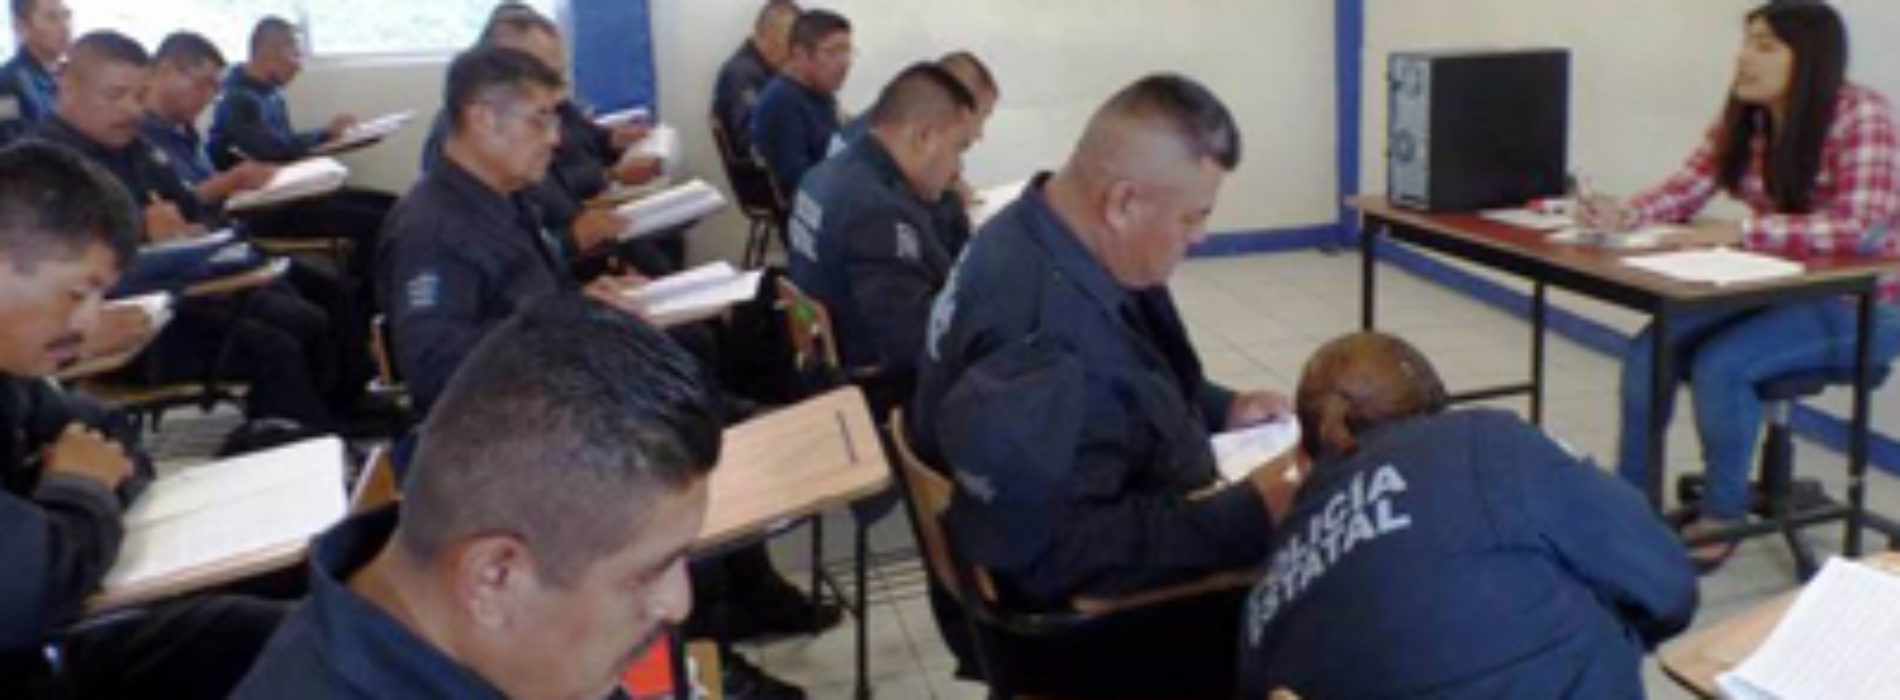 Más de mil policías preparados para el nuevo Sistema de Justicia Penal: SSPO